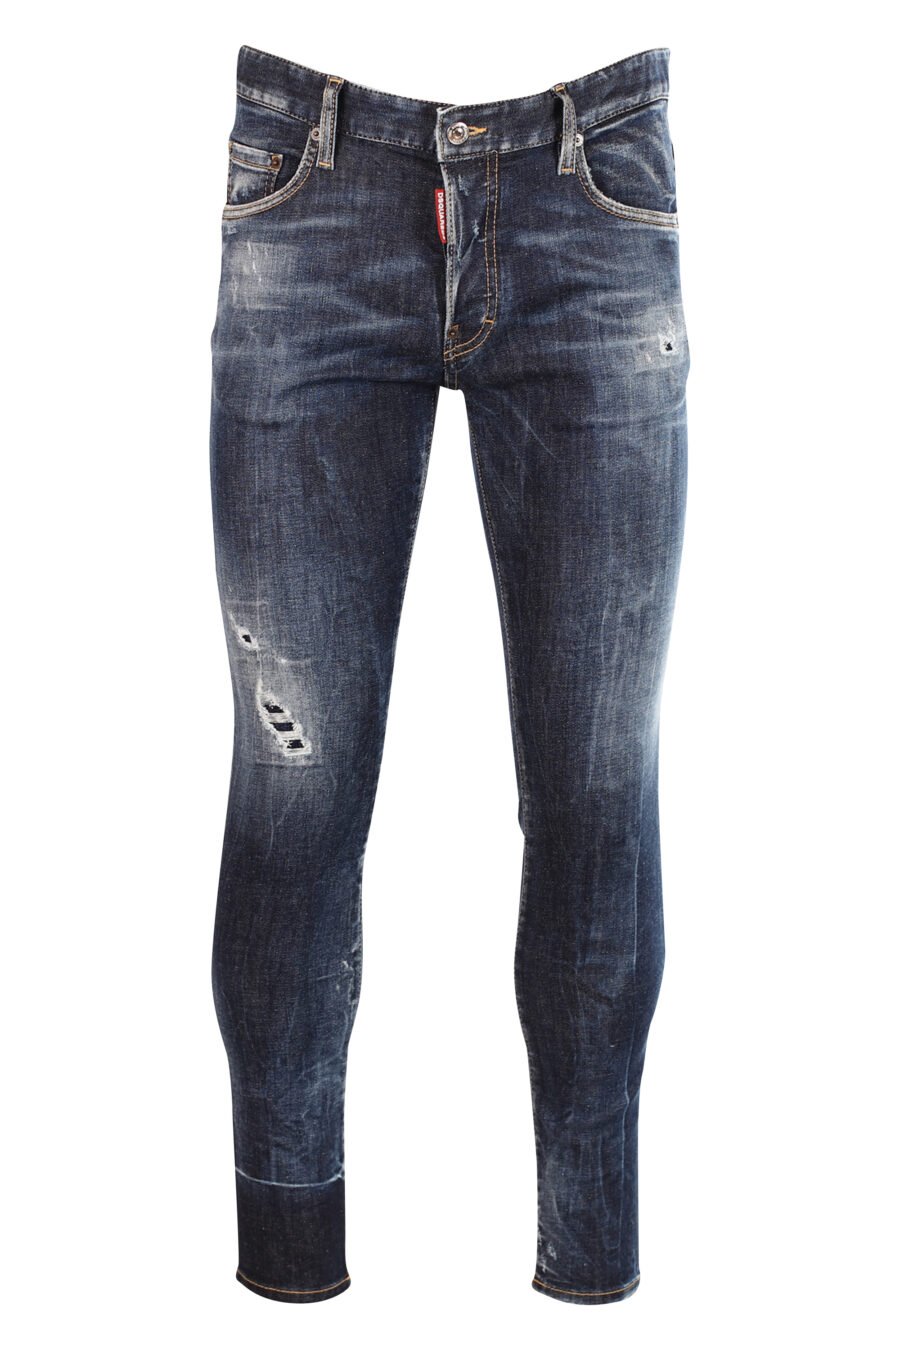 Jeans "super twinkey jean" blue with rips - 8052134966914